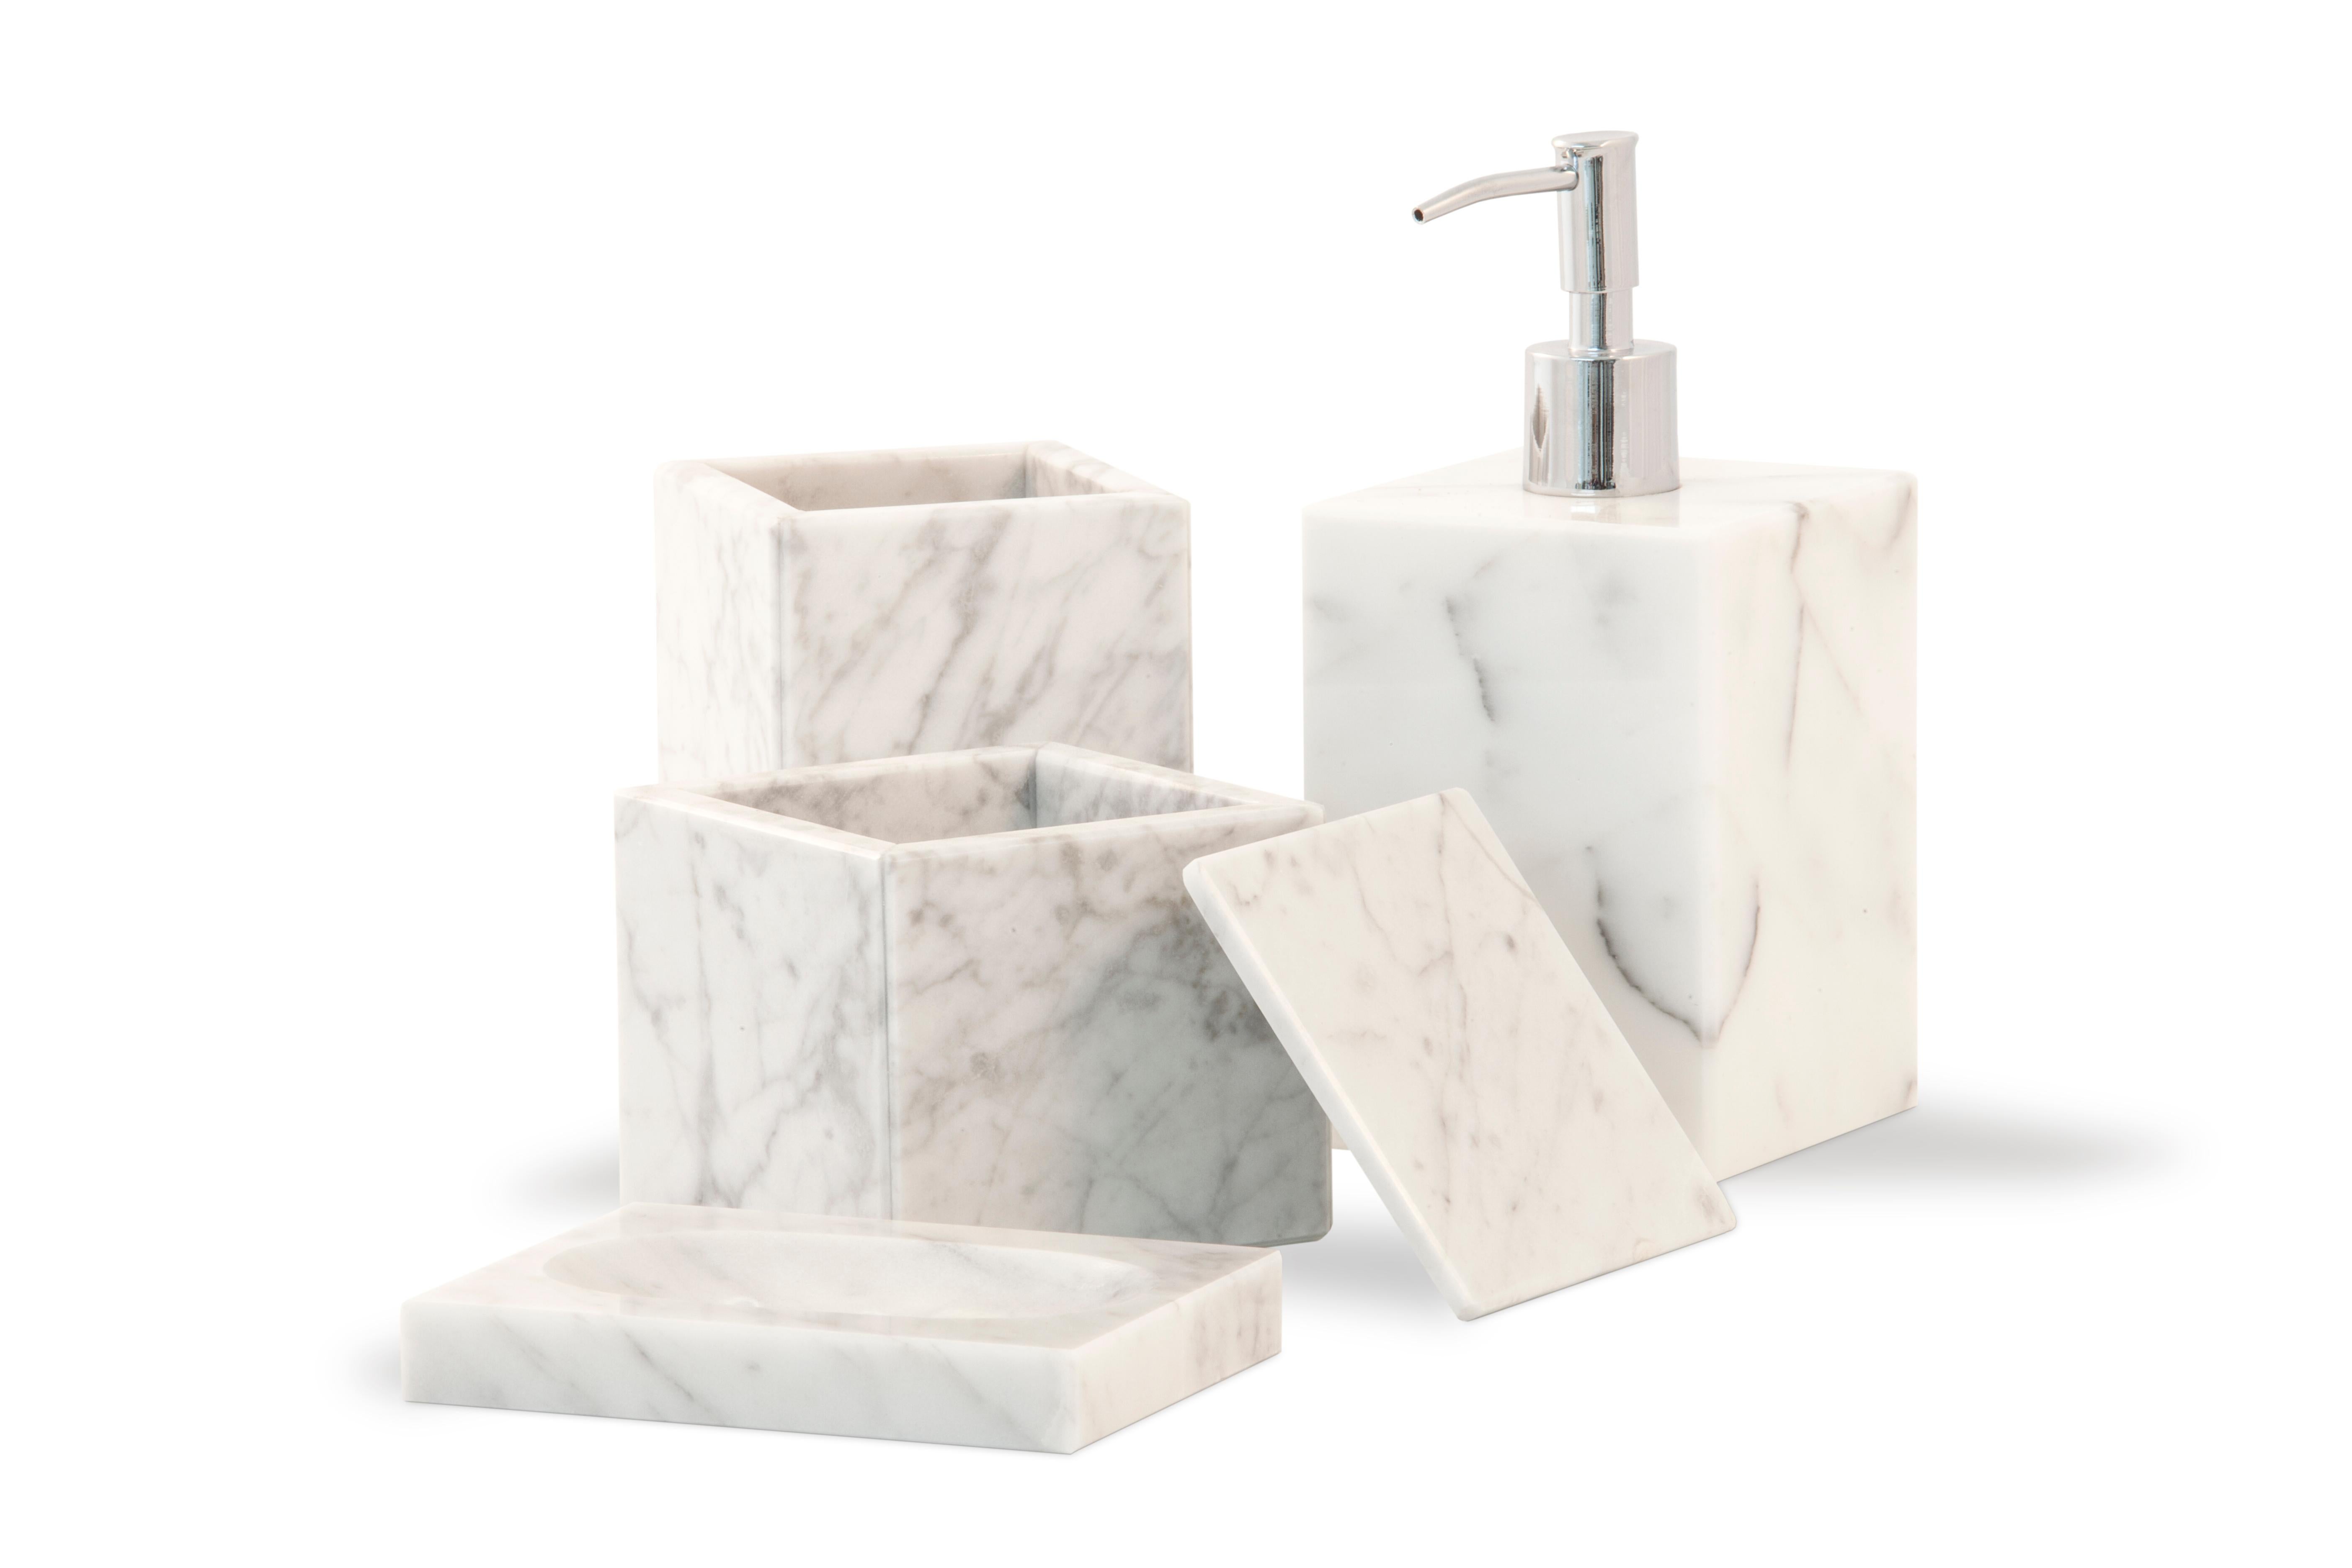 Quadratische Seifenschale aus weißem Carrara-Marmor mit kleinen Löchern für Wasser.

Jedes Stück ist in gewisser Weise einzigartig (da jeder Marmorblock unterschiedliche Maserungen und Schattierungen aufweist) und wird in Italien handgefertigt.